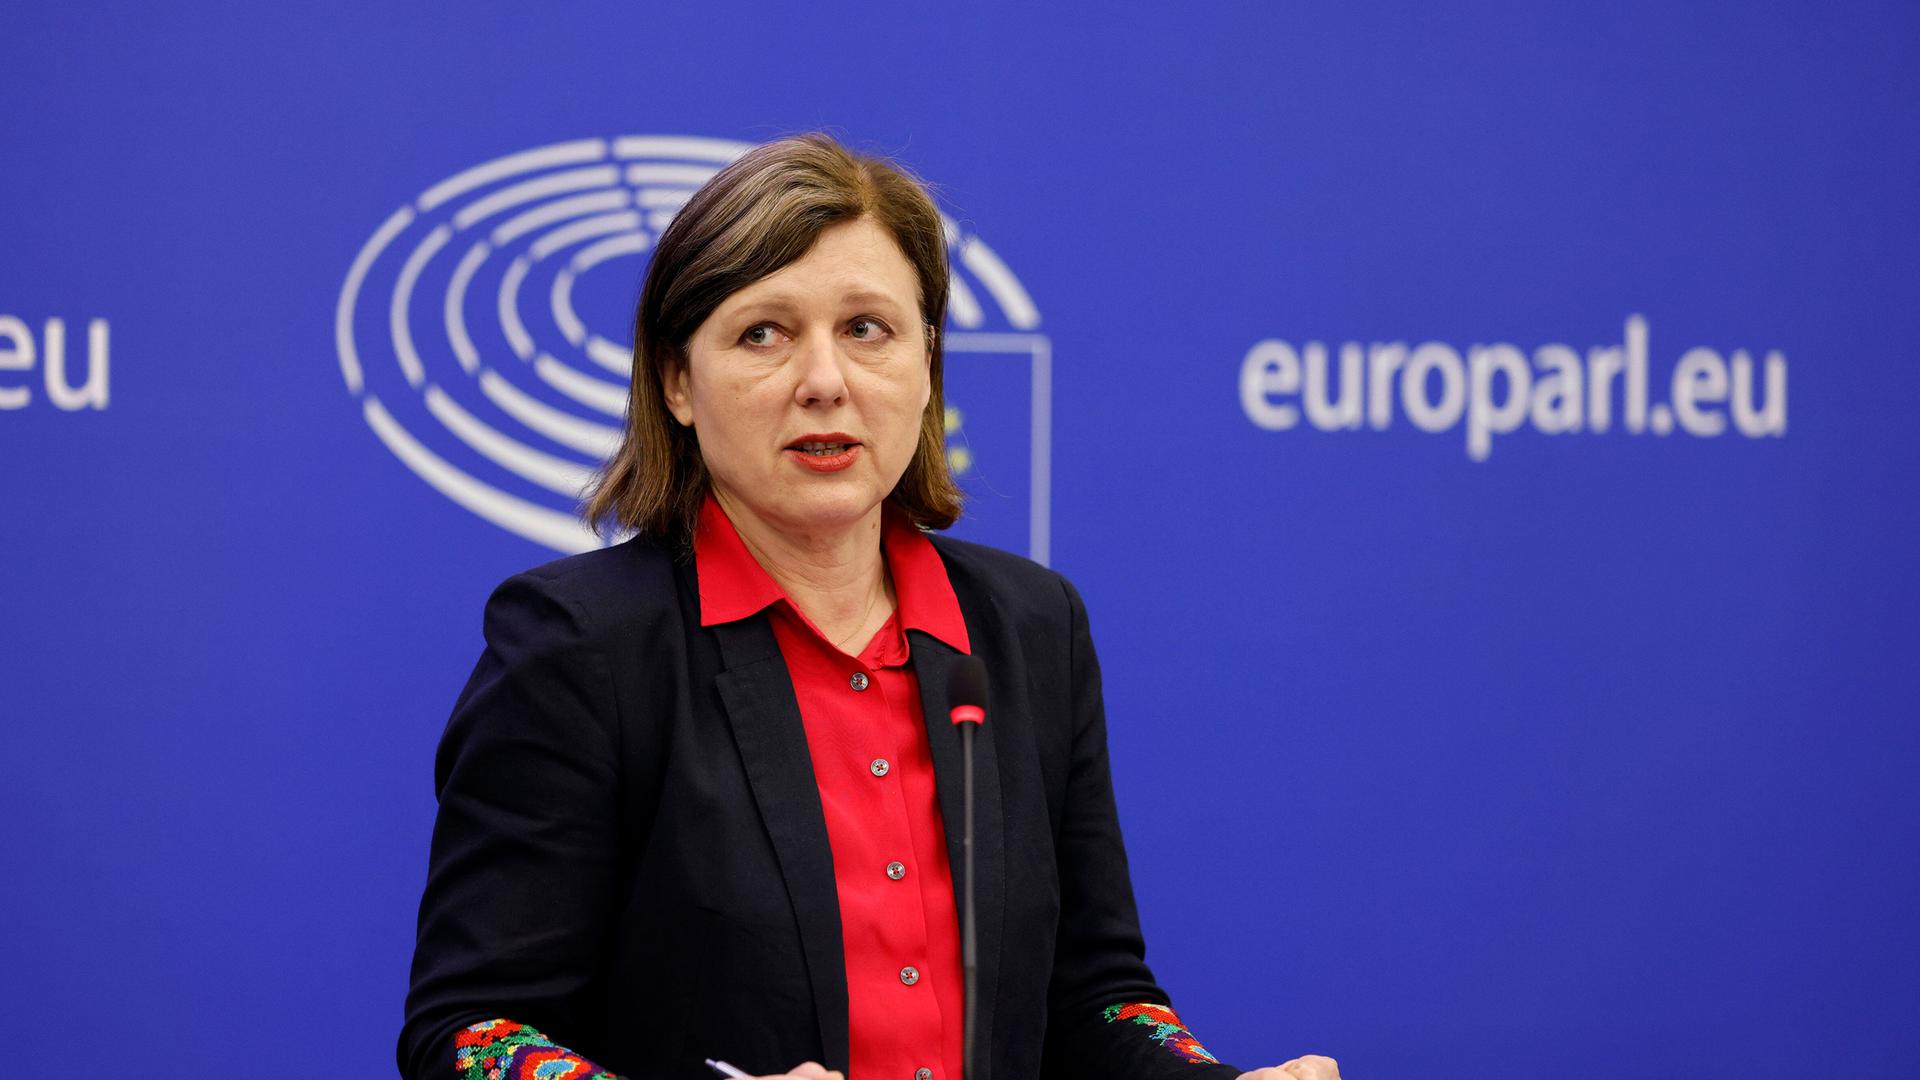 Jourova spricht vor einer blauen Wabd mit dem weißen Logo des Europaparlaments und der weißen Schrift "europarl.eu".